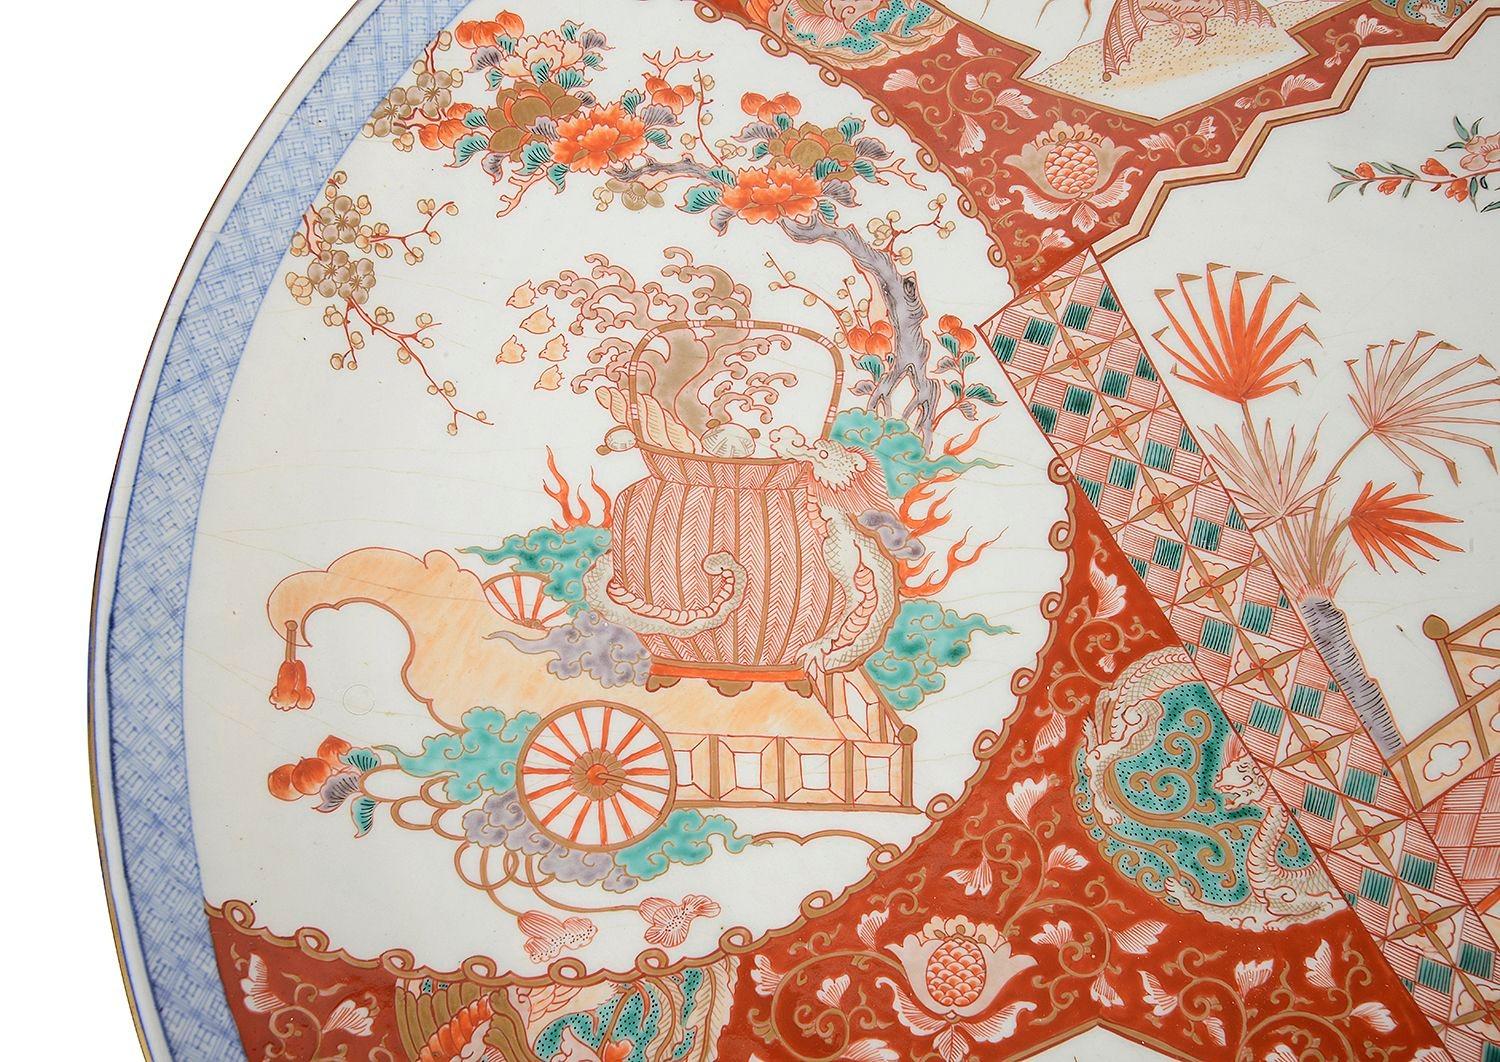 Eine gute Qualität späten 19. Jahrhundert japanischen Porzellan Imari runden Wand Ladegerät. Mit wunderschönen handgemalten Szenen aus fächerförmigen Tafeln, die einen Jungen darstellen, der Holzscheite für seinen Herrn trägt, und einen Wagen, der